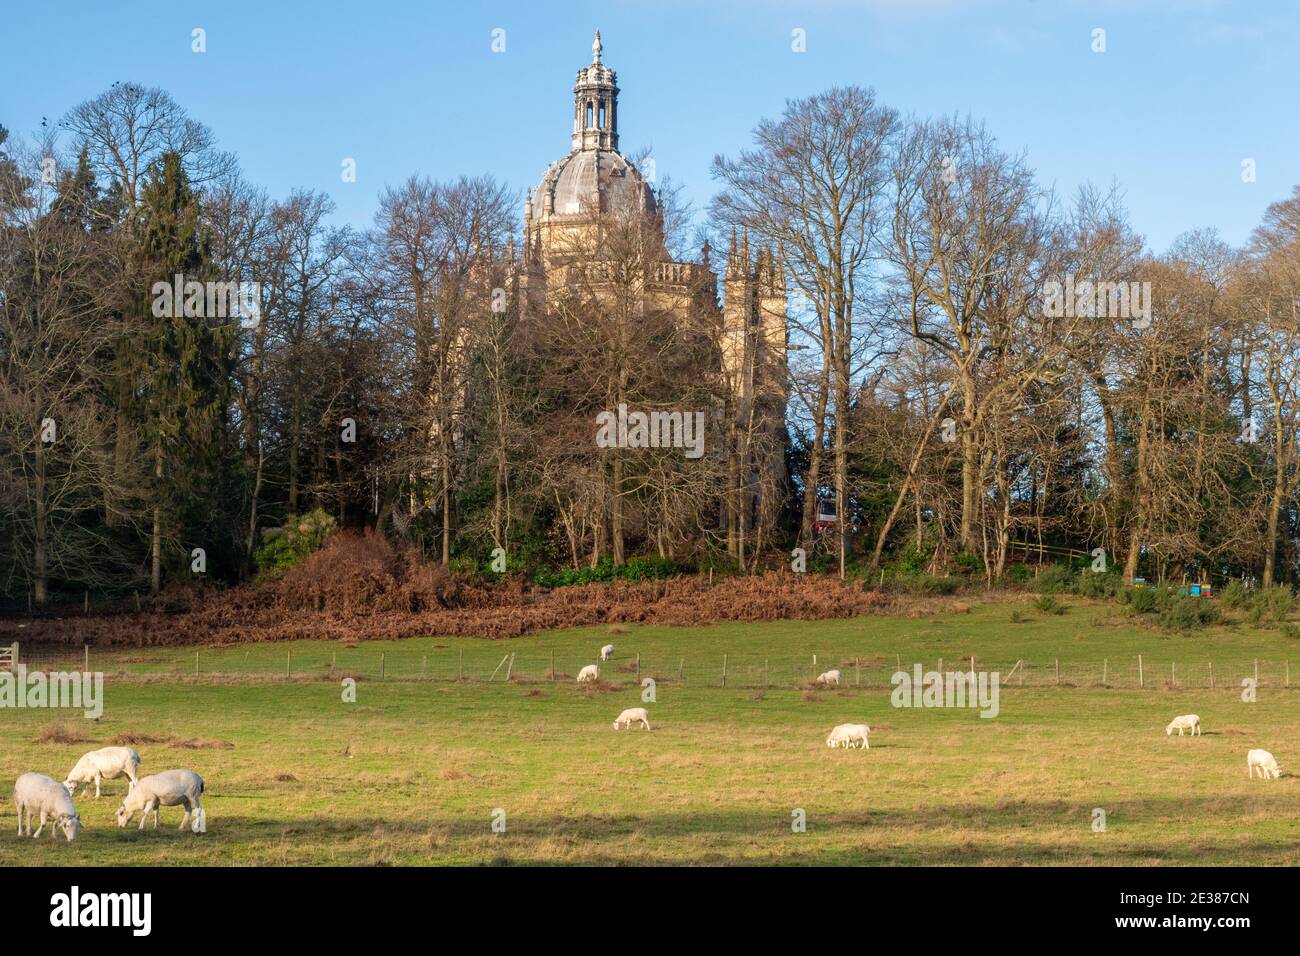 L'église de l'abbaye Saint-Michel, un monastère bénédictin de Farnborough, Hampshire, Royaume-Uni, avec des moutons paître dans un champ au premier plan Banque D'Images